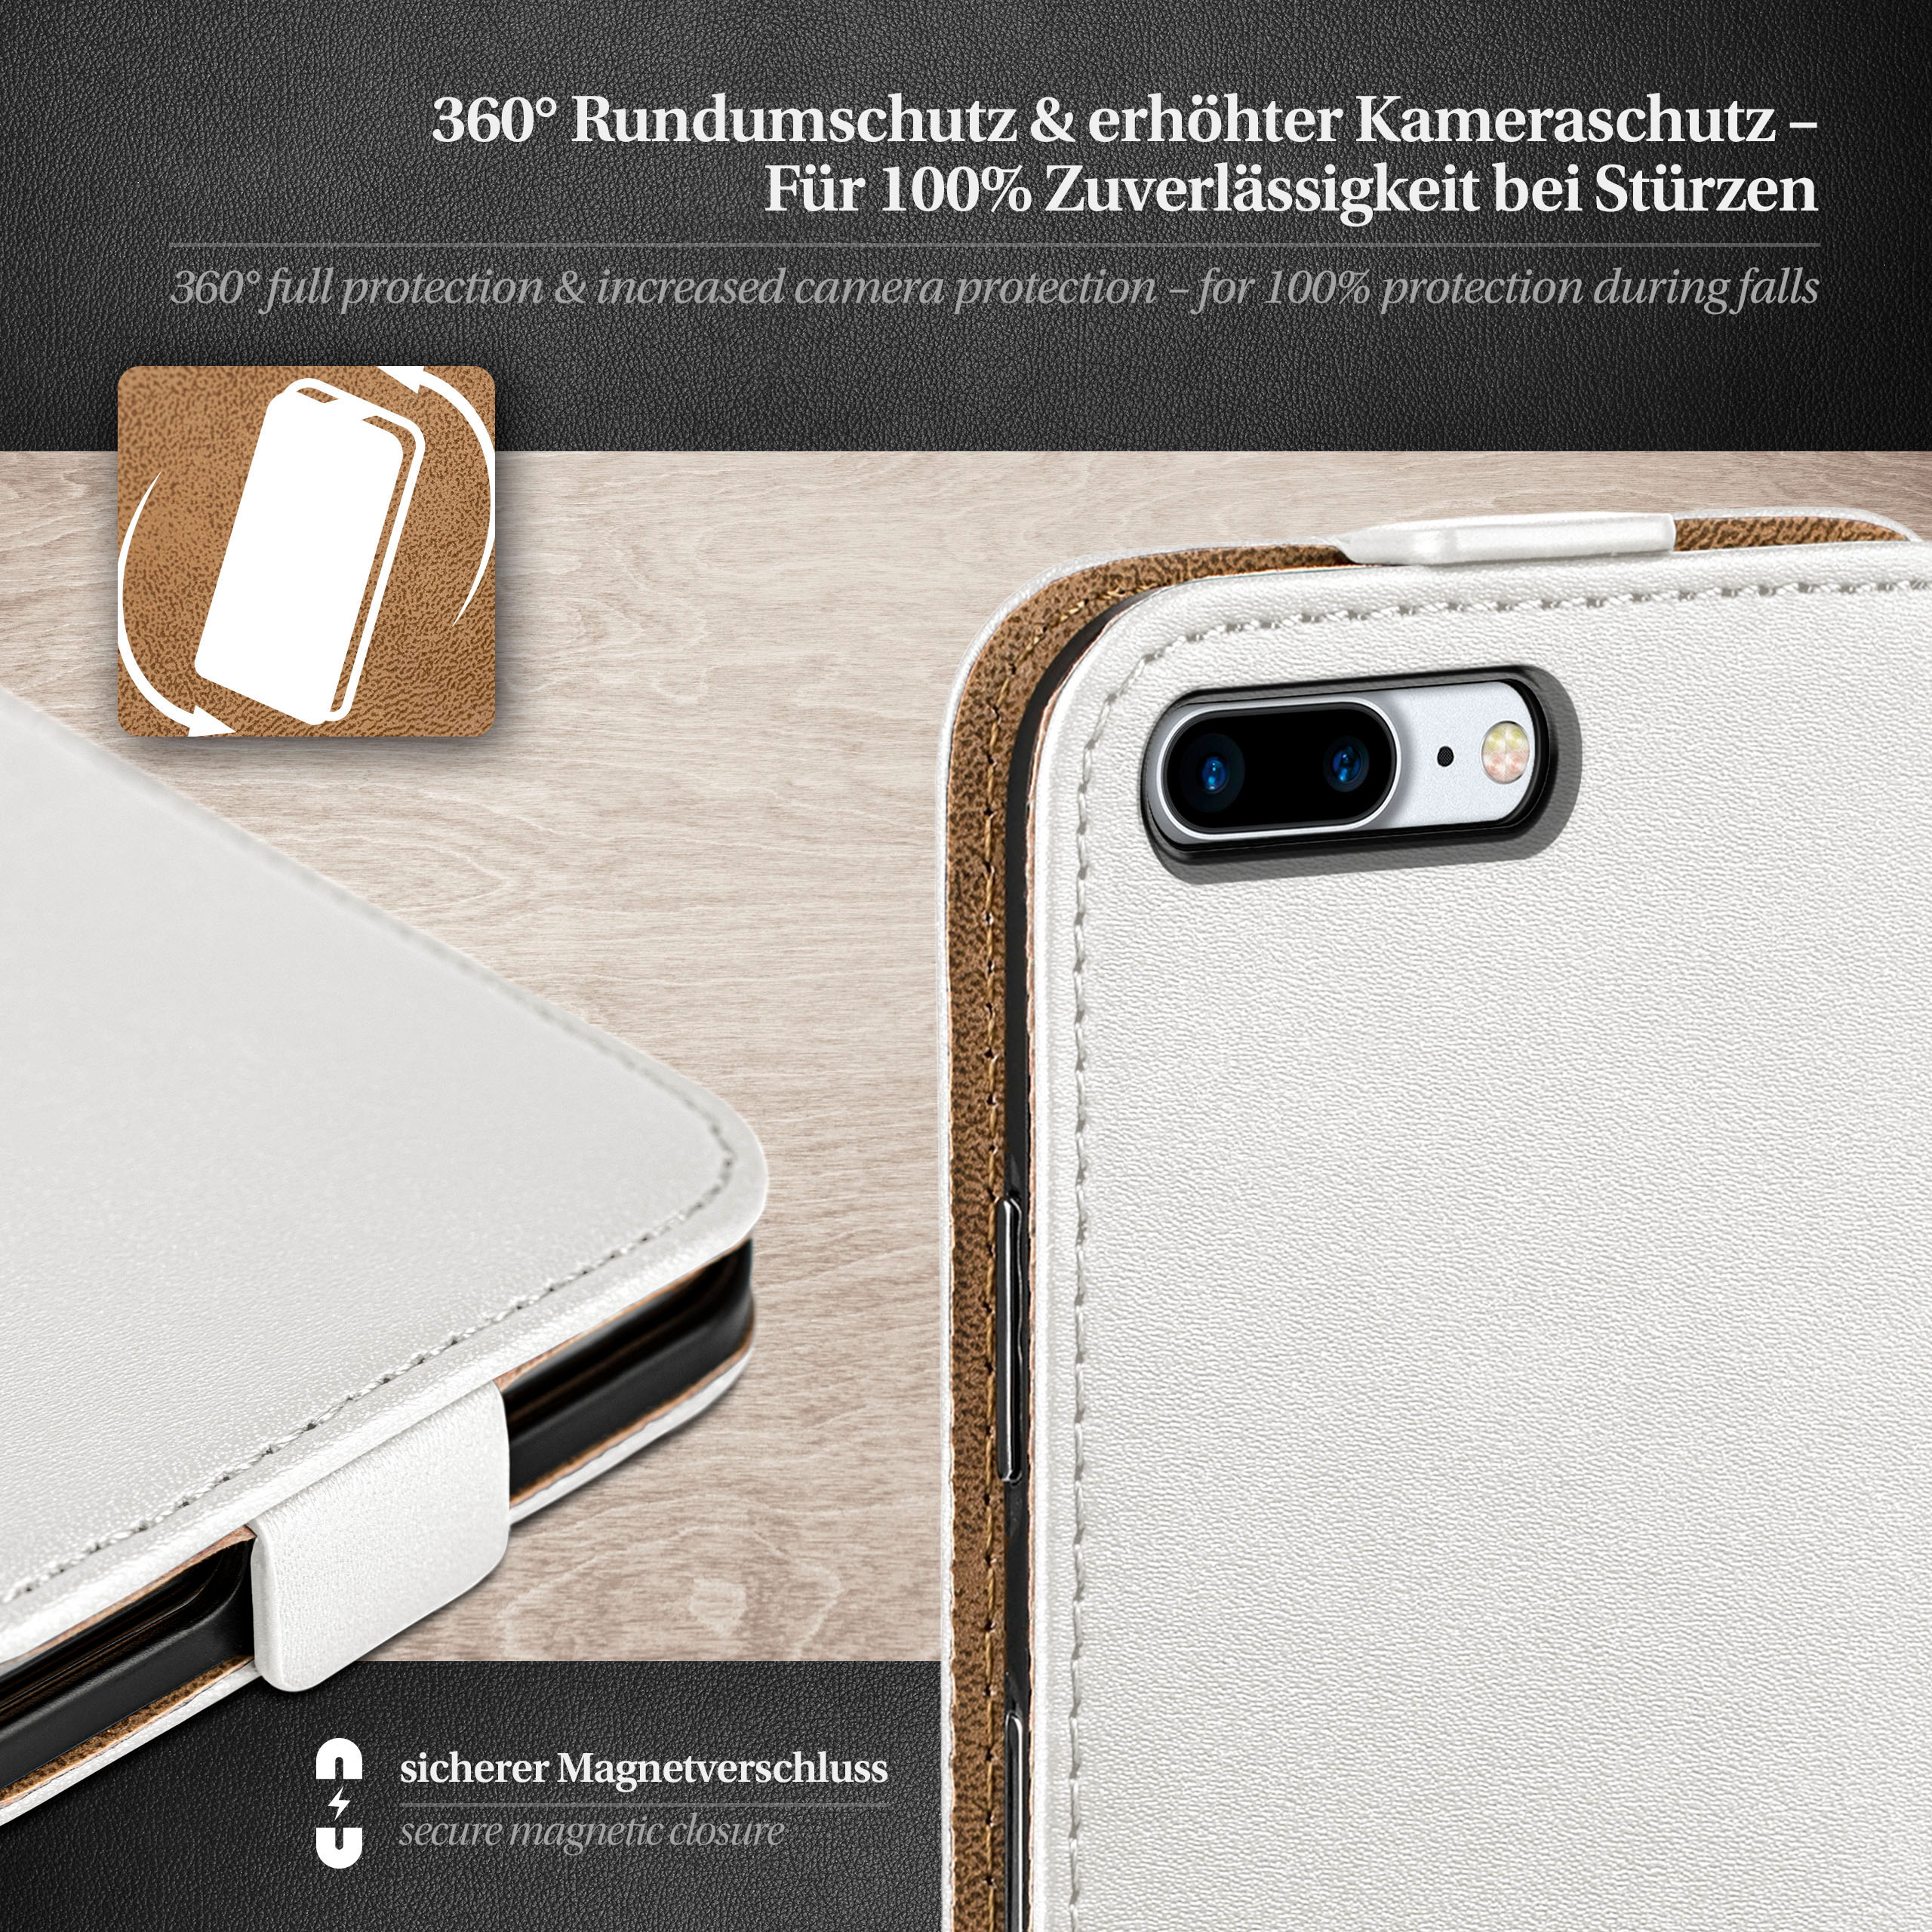 Cover, Pearl-White / Flip Flip iPhone 7 8 MOEX Plus, iPhone Case, Plus Apple,